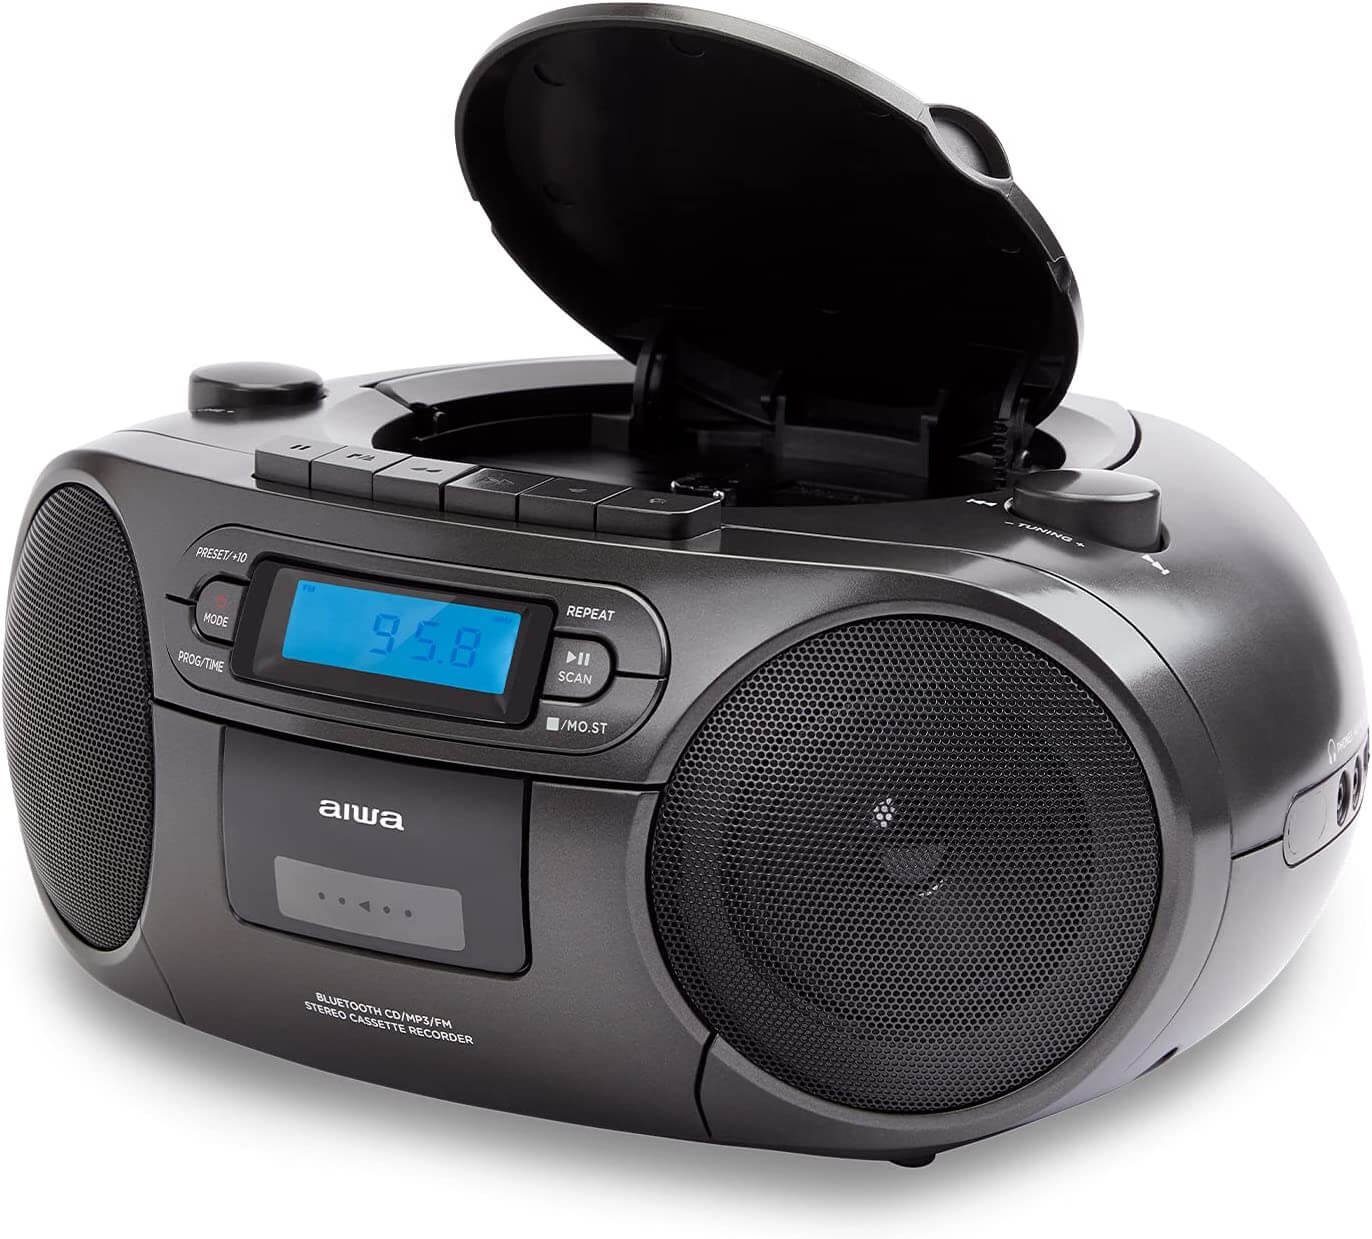 Aiwa »BBTC-550 Tragbarer CD Player mit Radio, Kassette, Bluetooth und USB« tragbarer  CD-Player (Digitaluhr mit 24h Anzeigeformat 6 W RMS Audio-Ausgangsleistung)